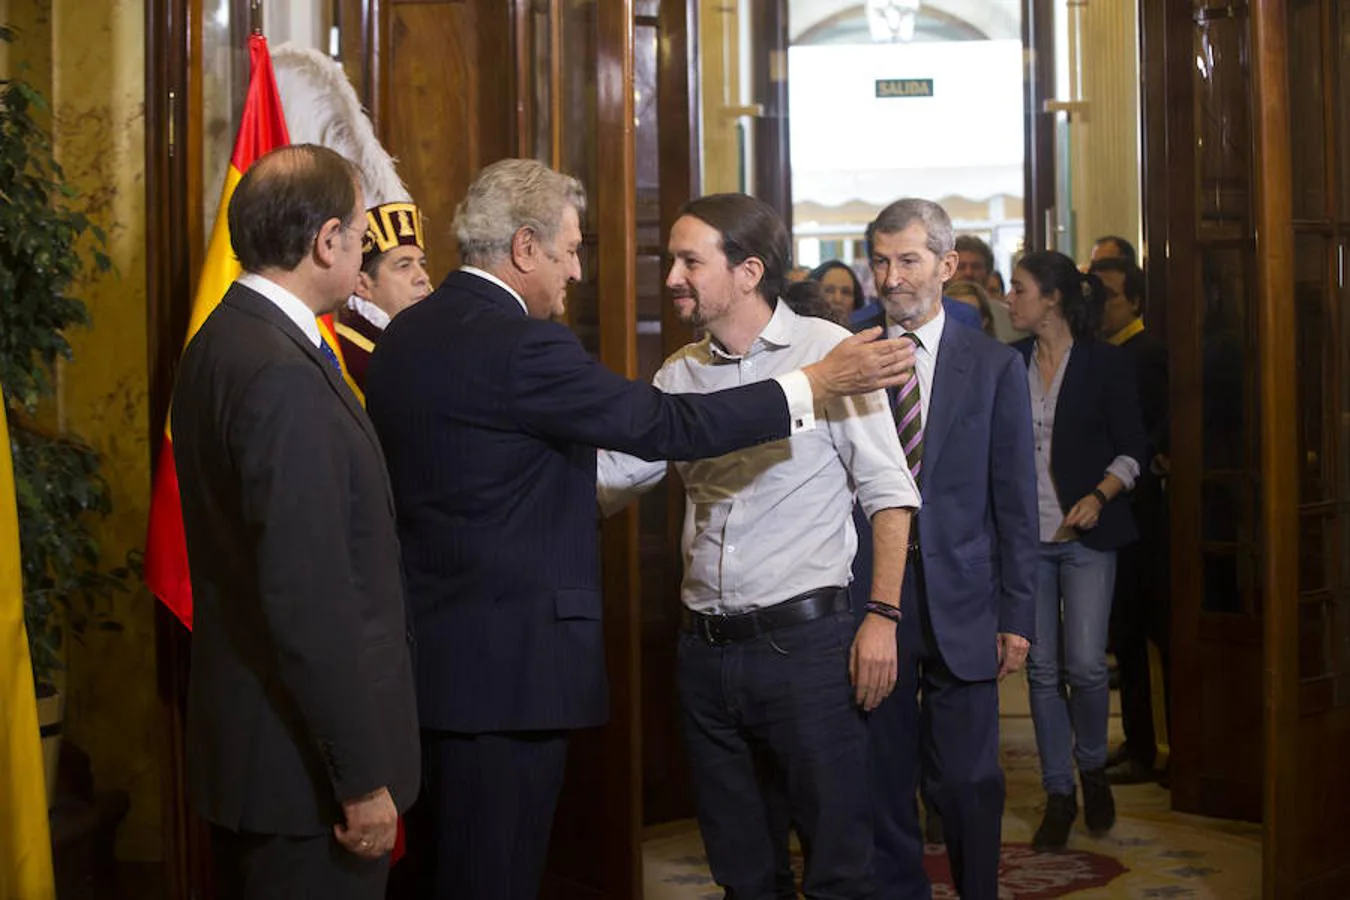 Pablo Iglesias (Podemos) vivió su primer Día de la Constitución el 6 de diciembre del año 2015. En la imagen, Iglesias saluda al presidente del Congreso, Jesús Posada